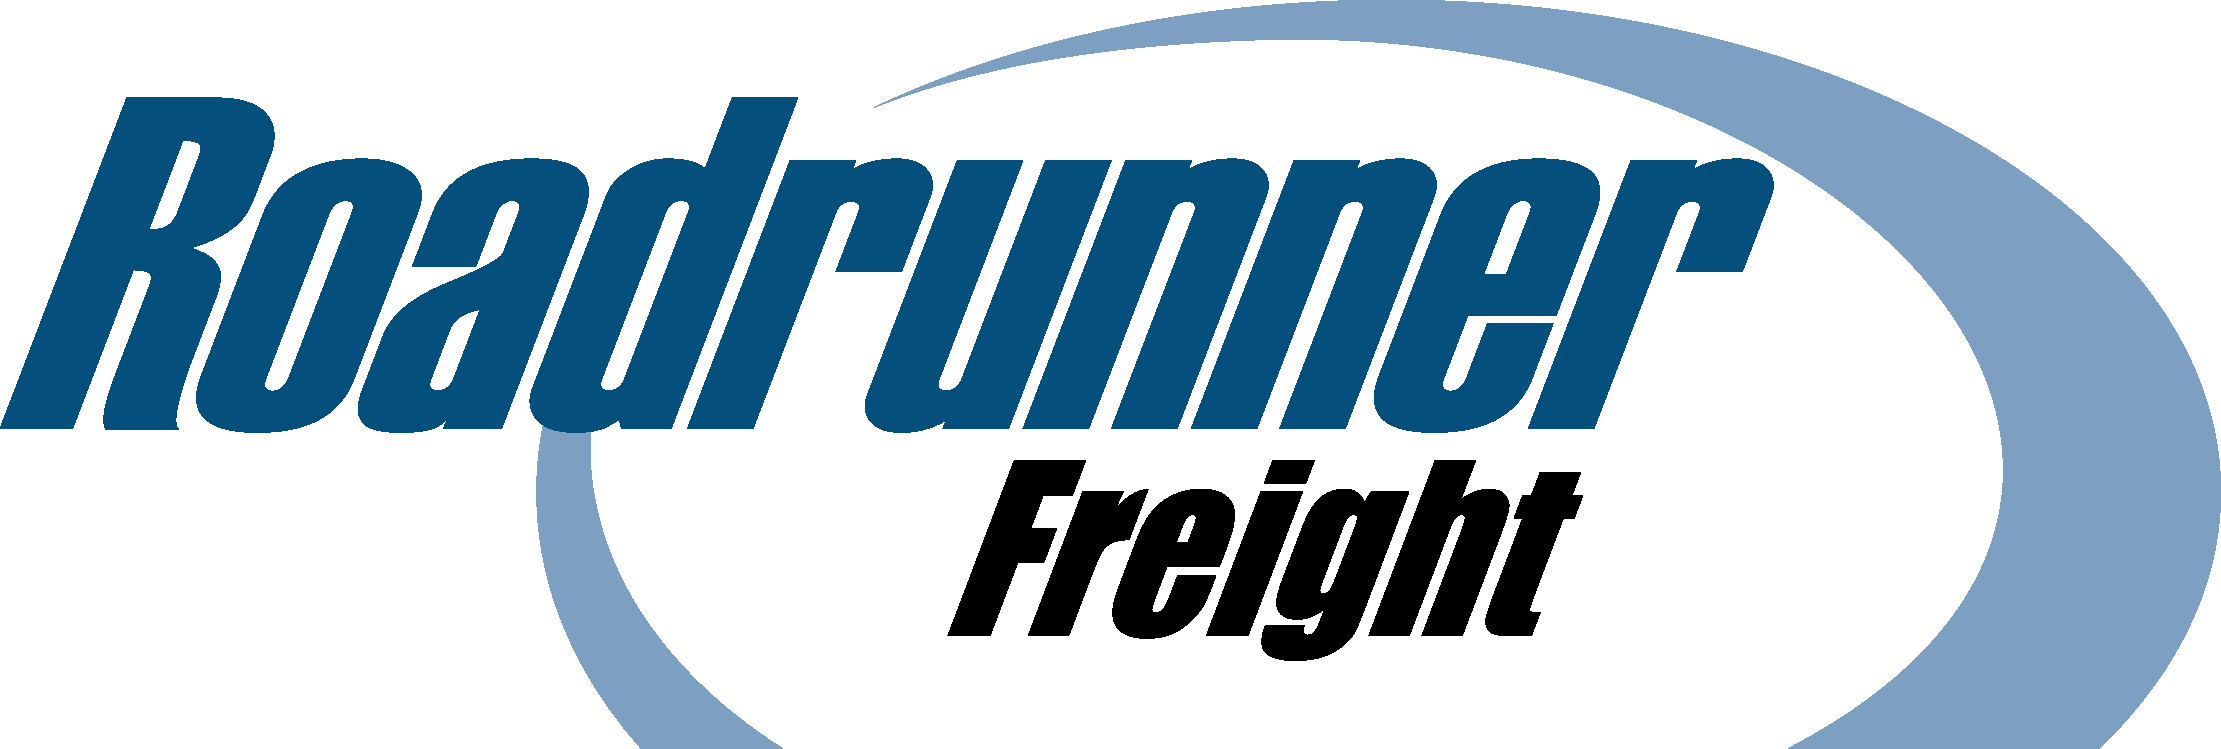 Roadrunner-freight-logo